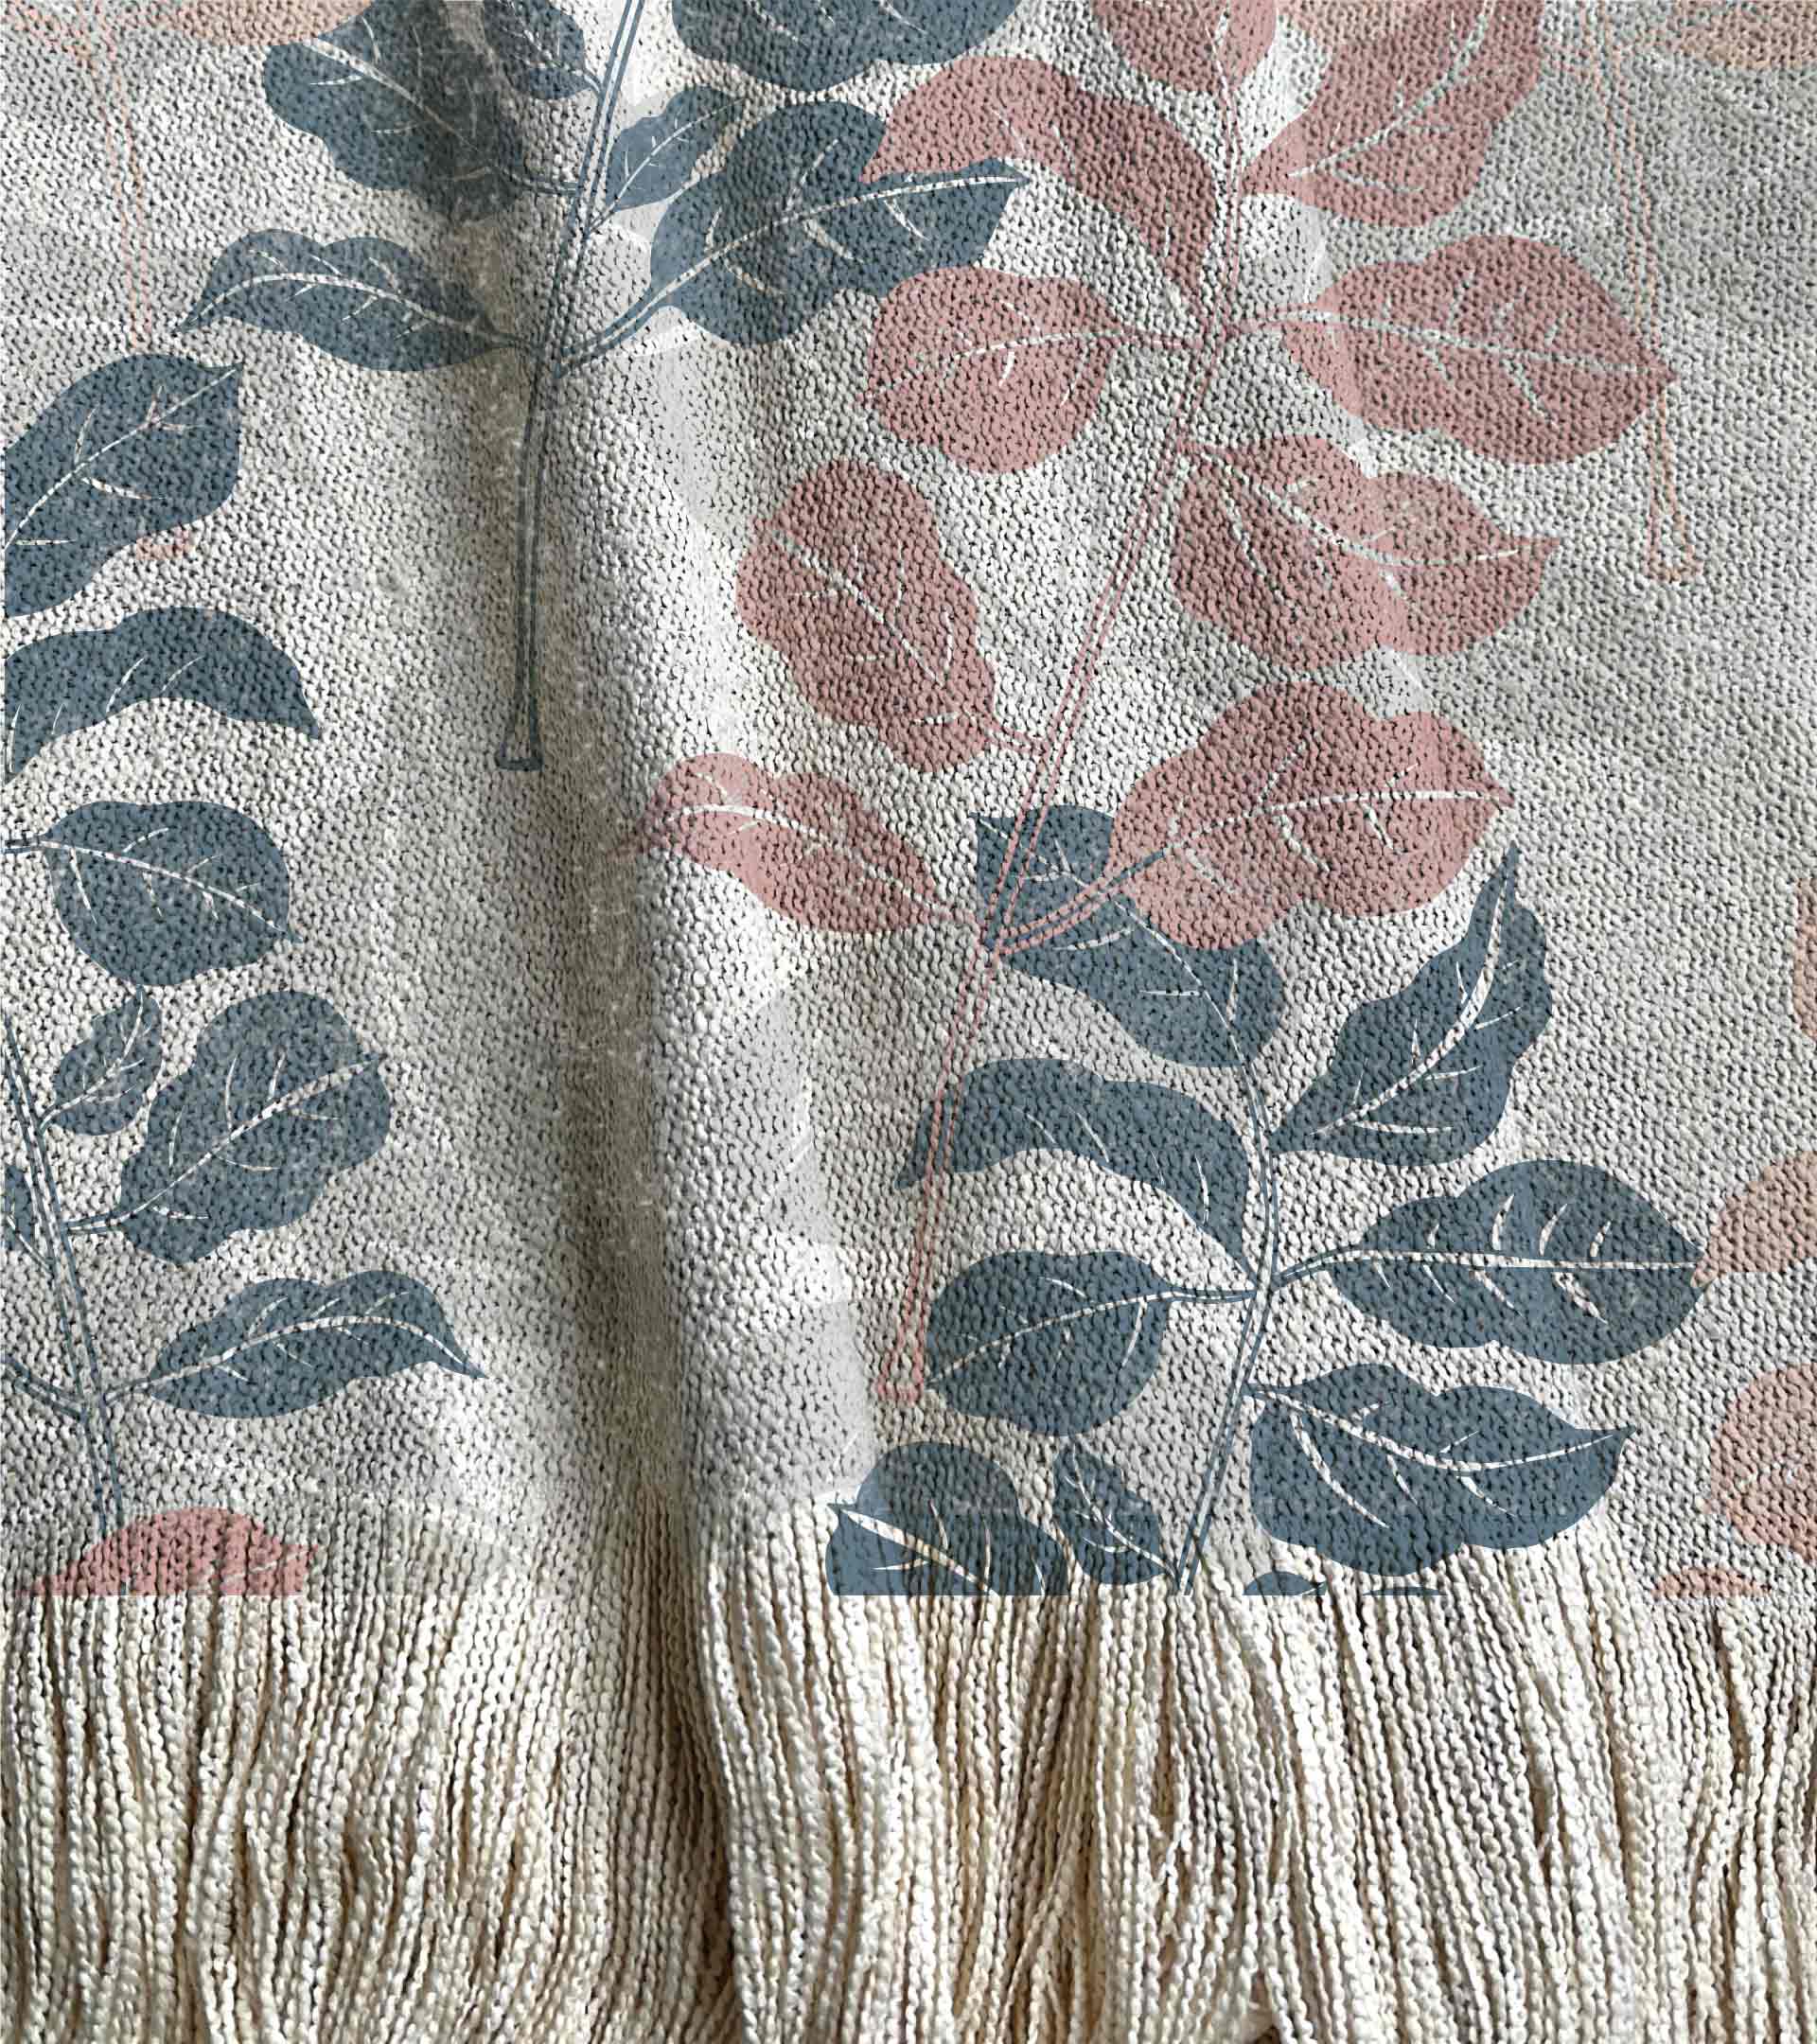 Manta tejida diseño botanico con ramas y hojas de color rosado, azul y gris